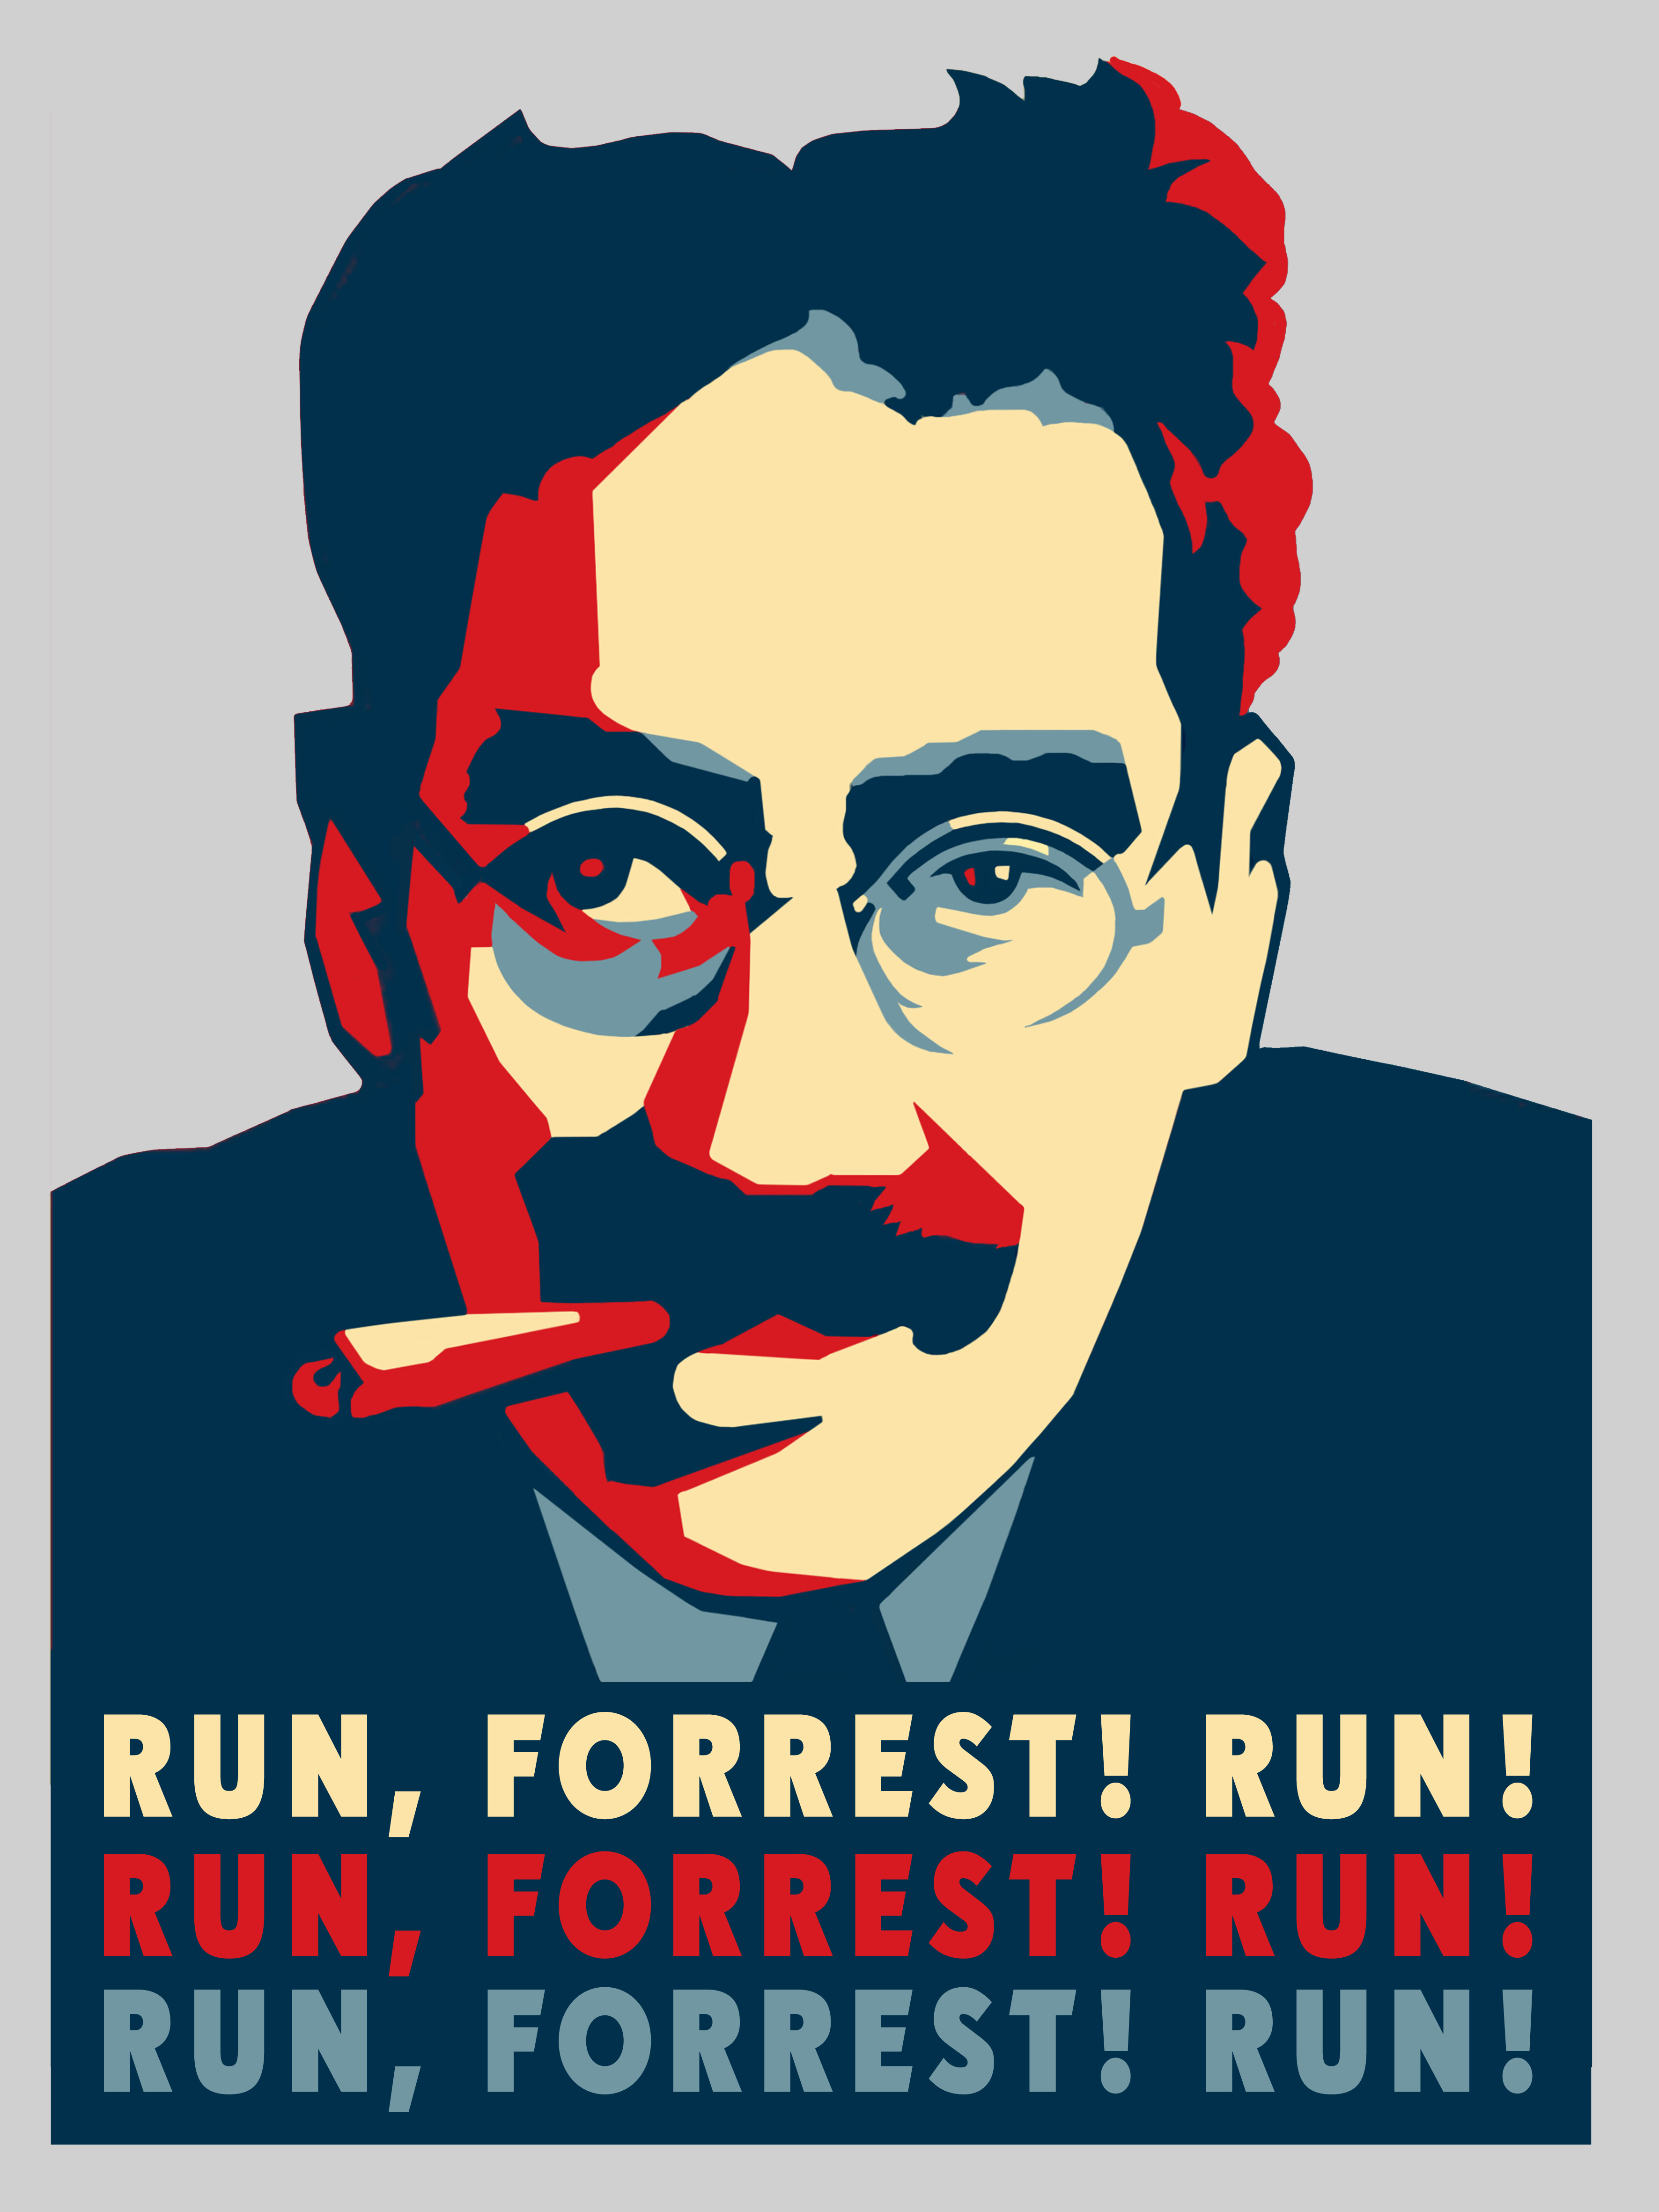 принт для печати мерча run, Forrest! run!